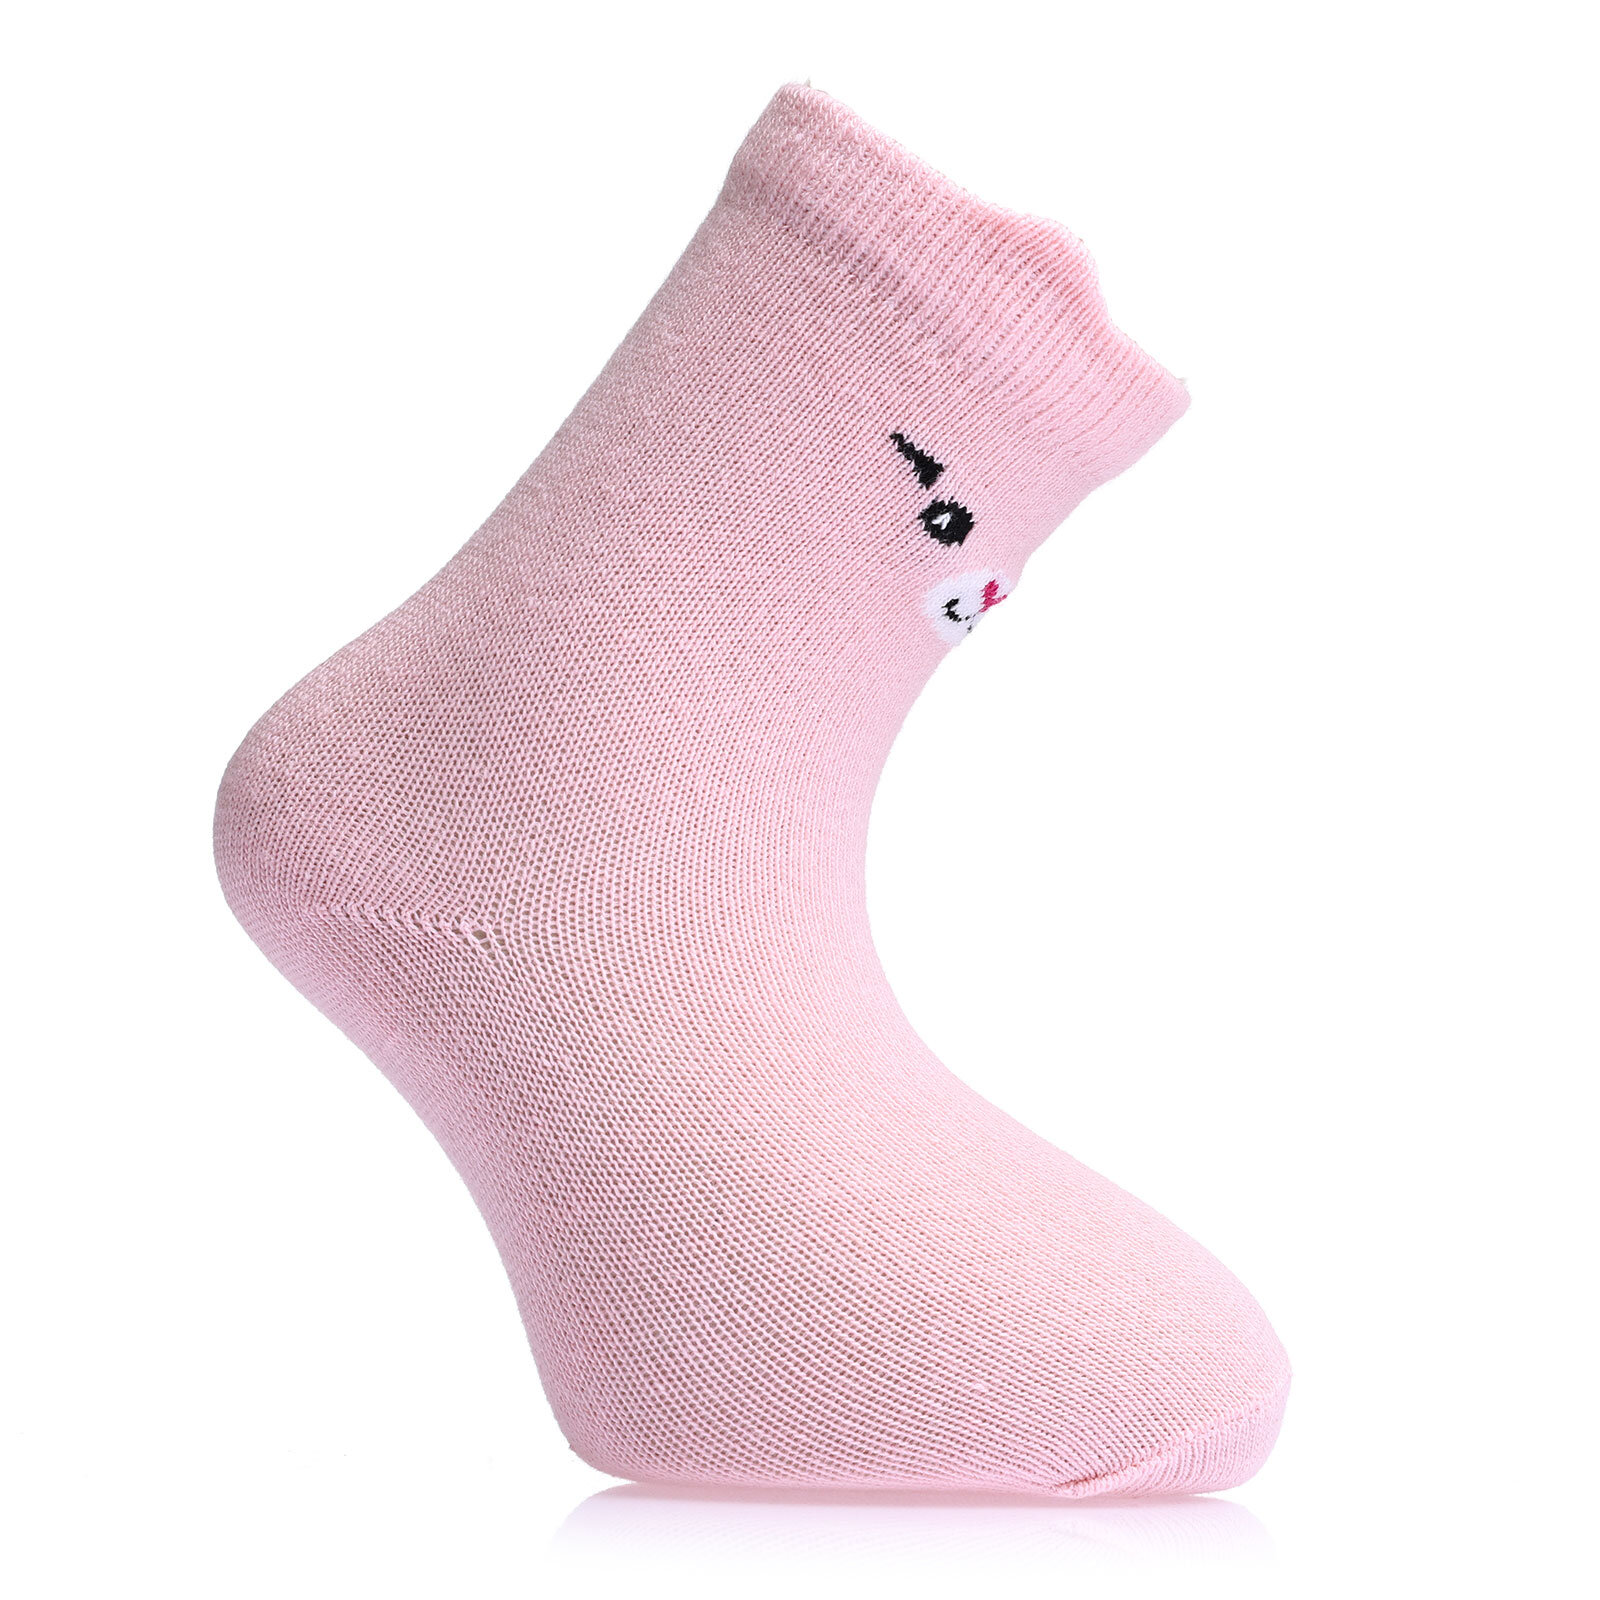 Tavşan Desenli 6'lı Soket Çorap 6lı Soket Çorap Kız Bebek